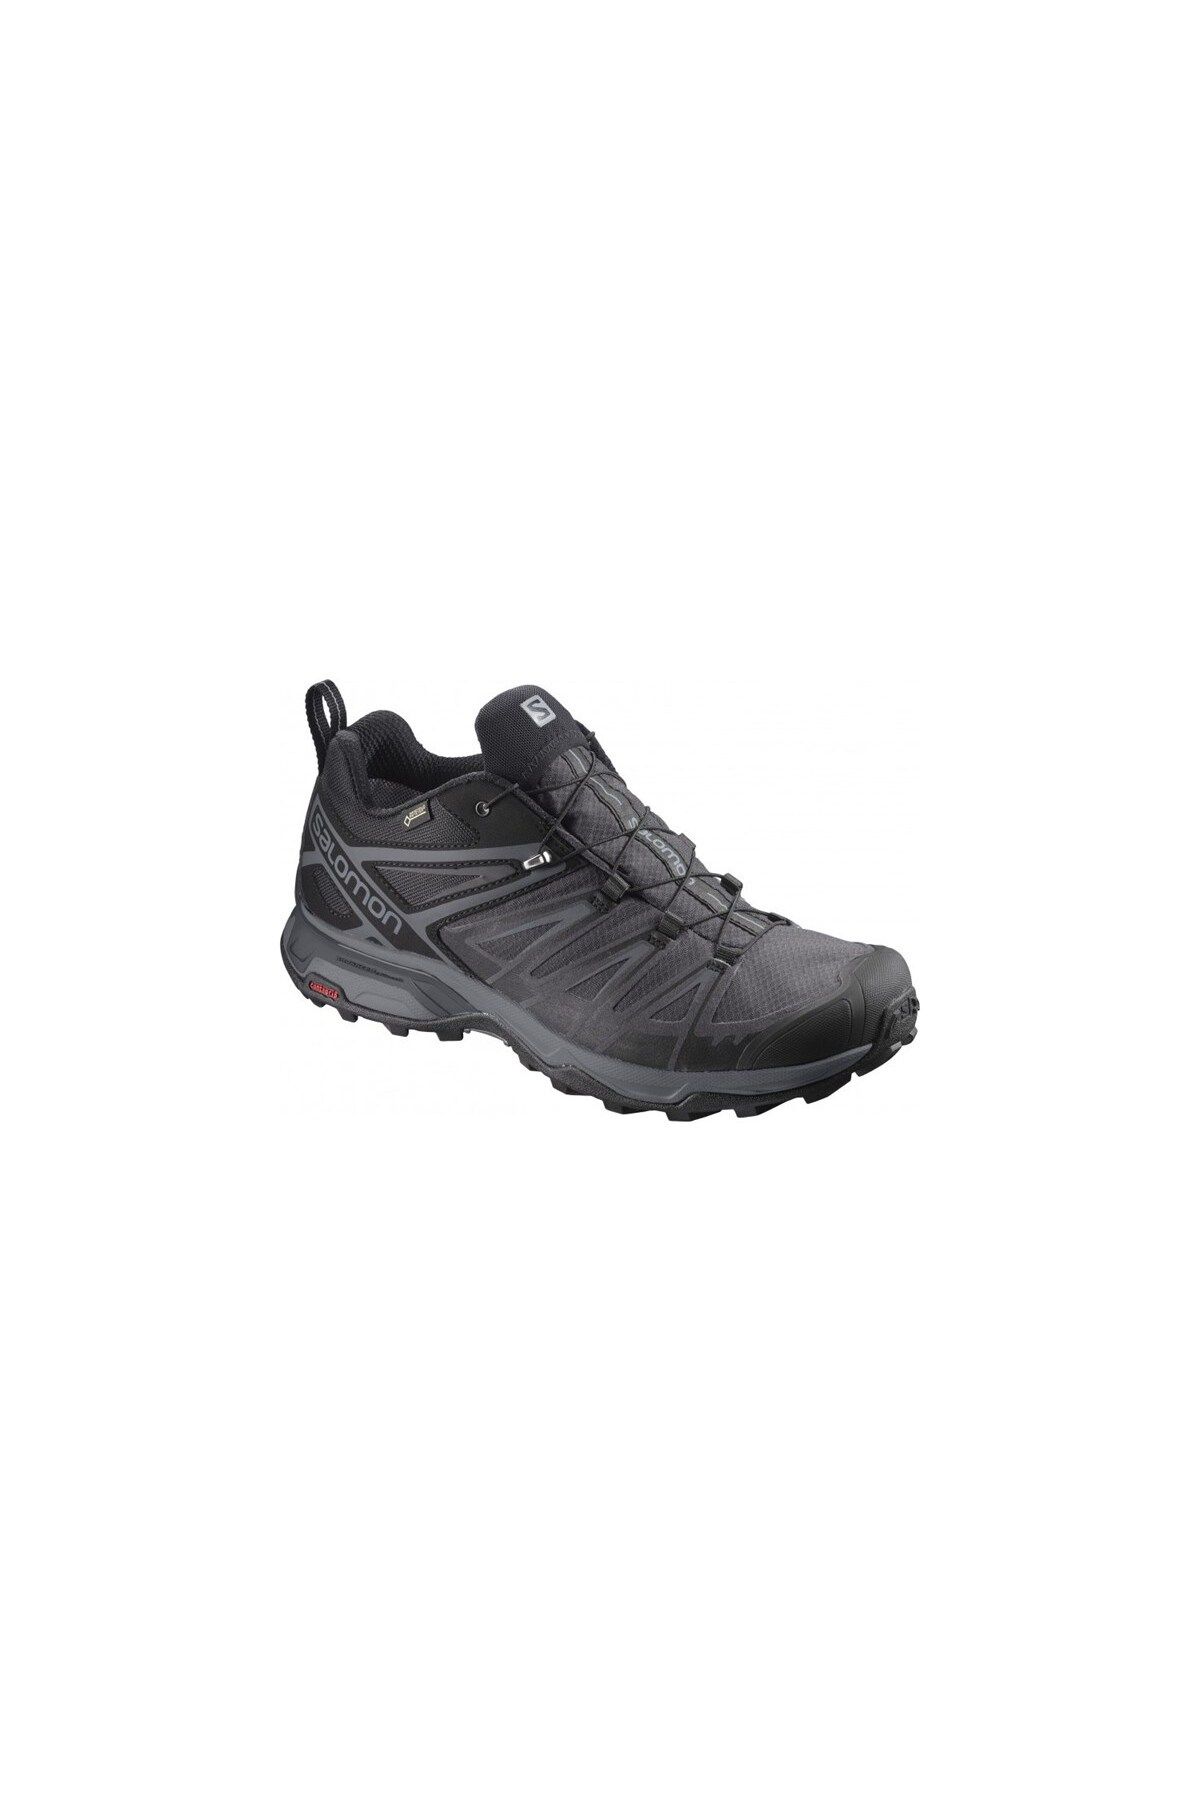 Salomon X Ultra 3 Gtx Erkek Ayakkabı L39867200